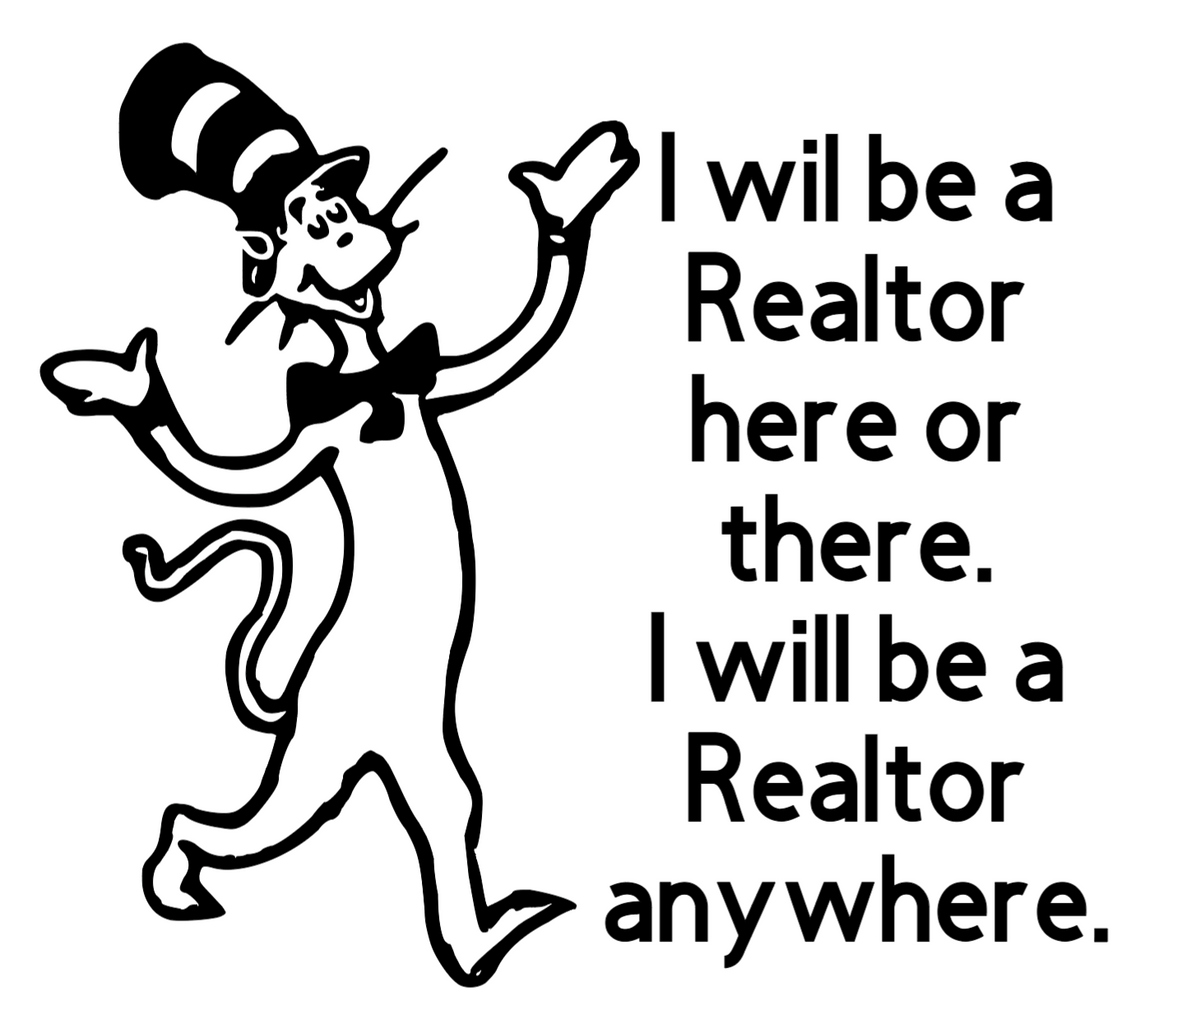 I will be a Realtor